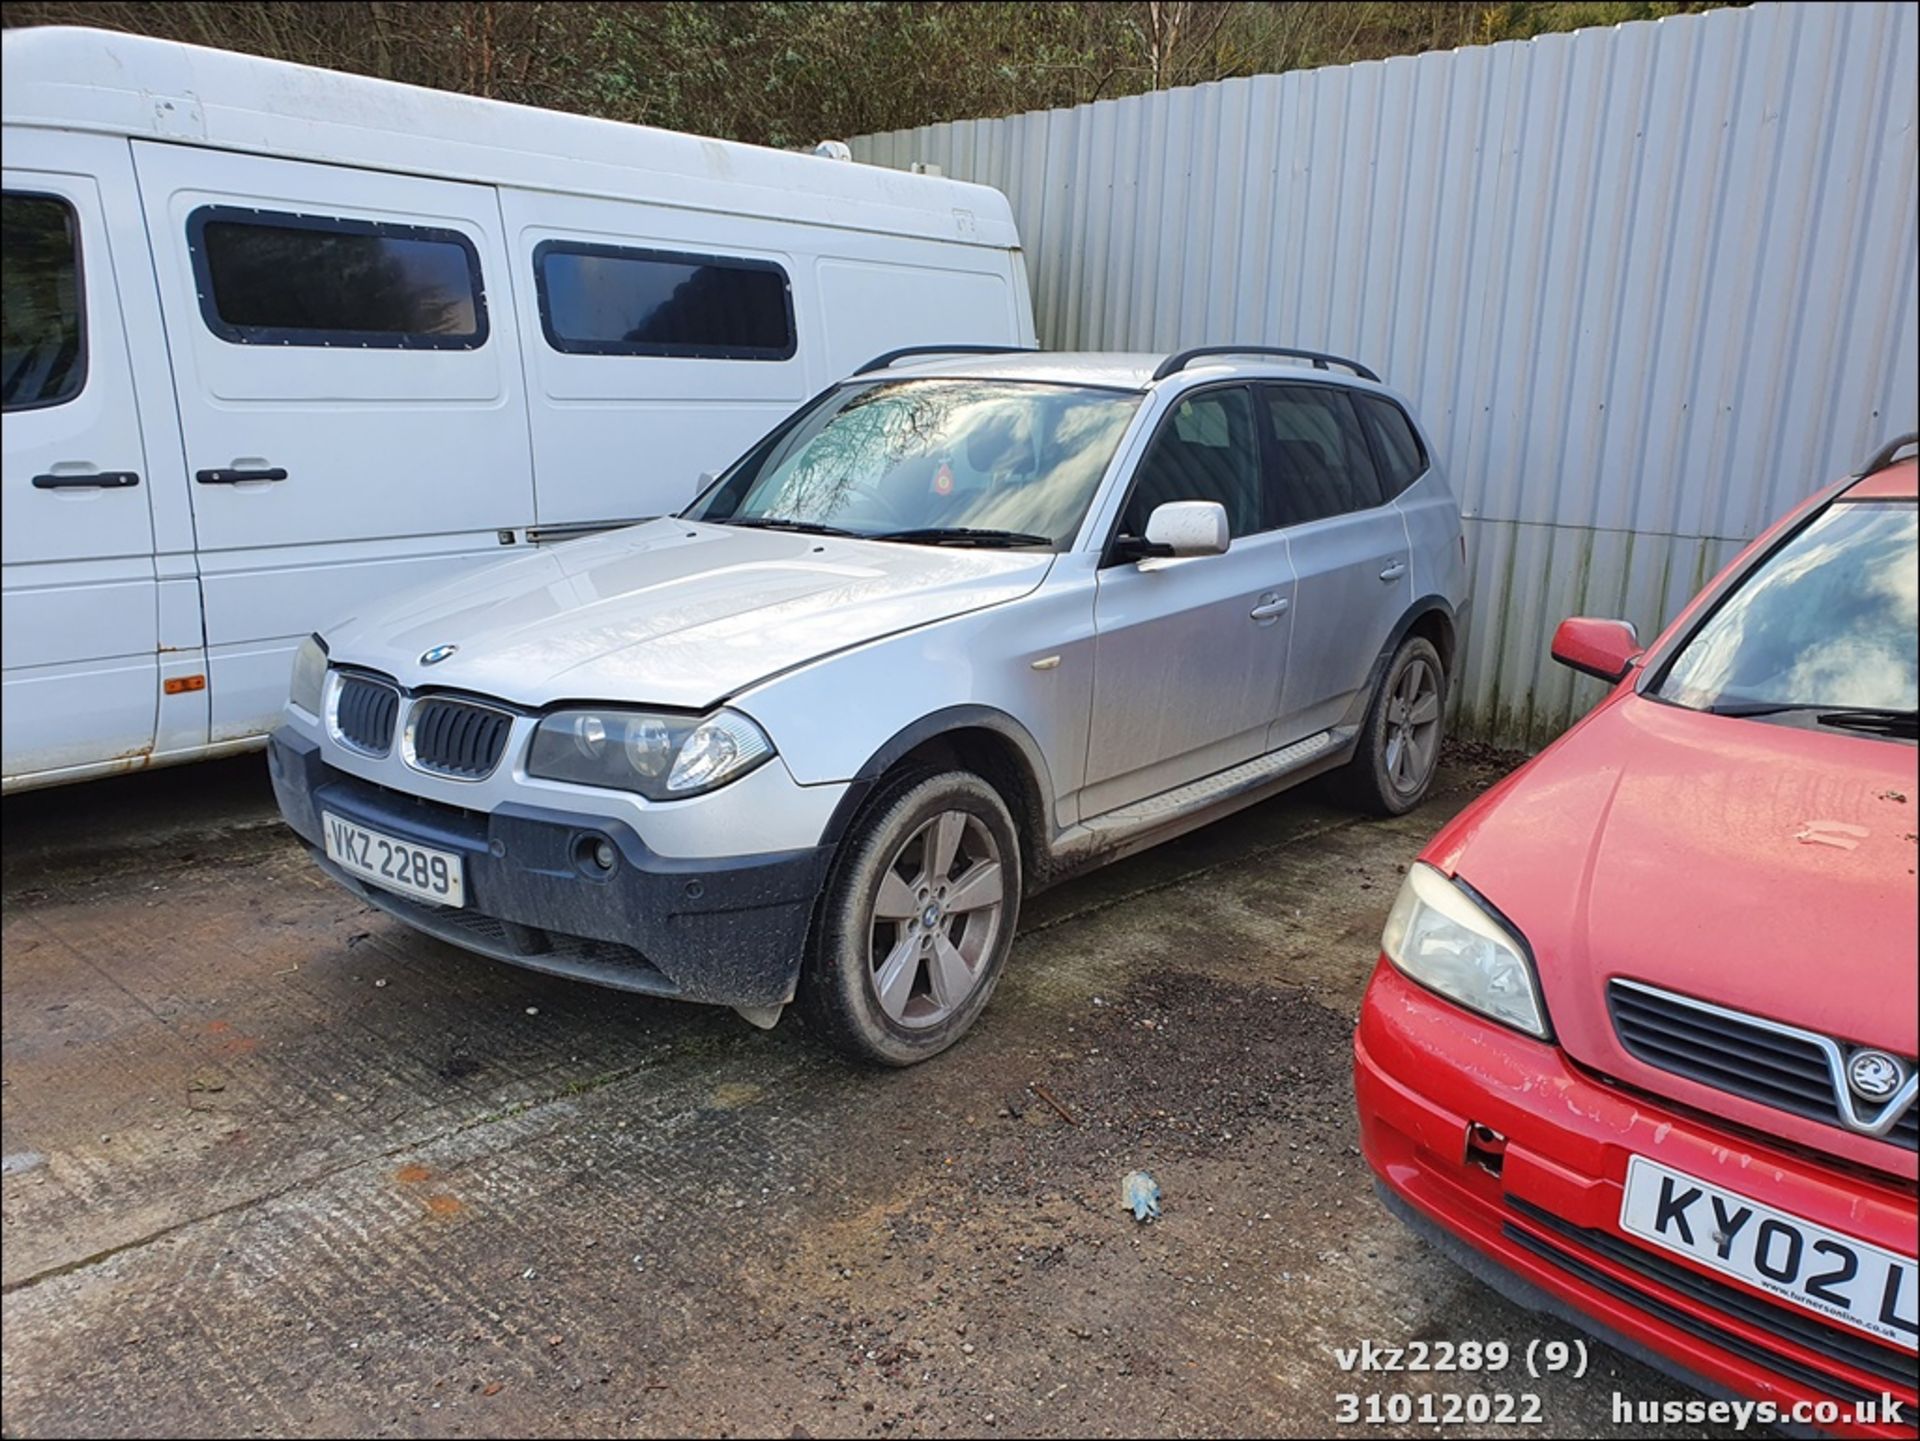 2005 BMW X3 D SPORT - 1995cc 5dr Estate (Silver) - Image 9 of 27